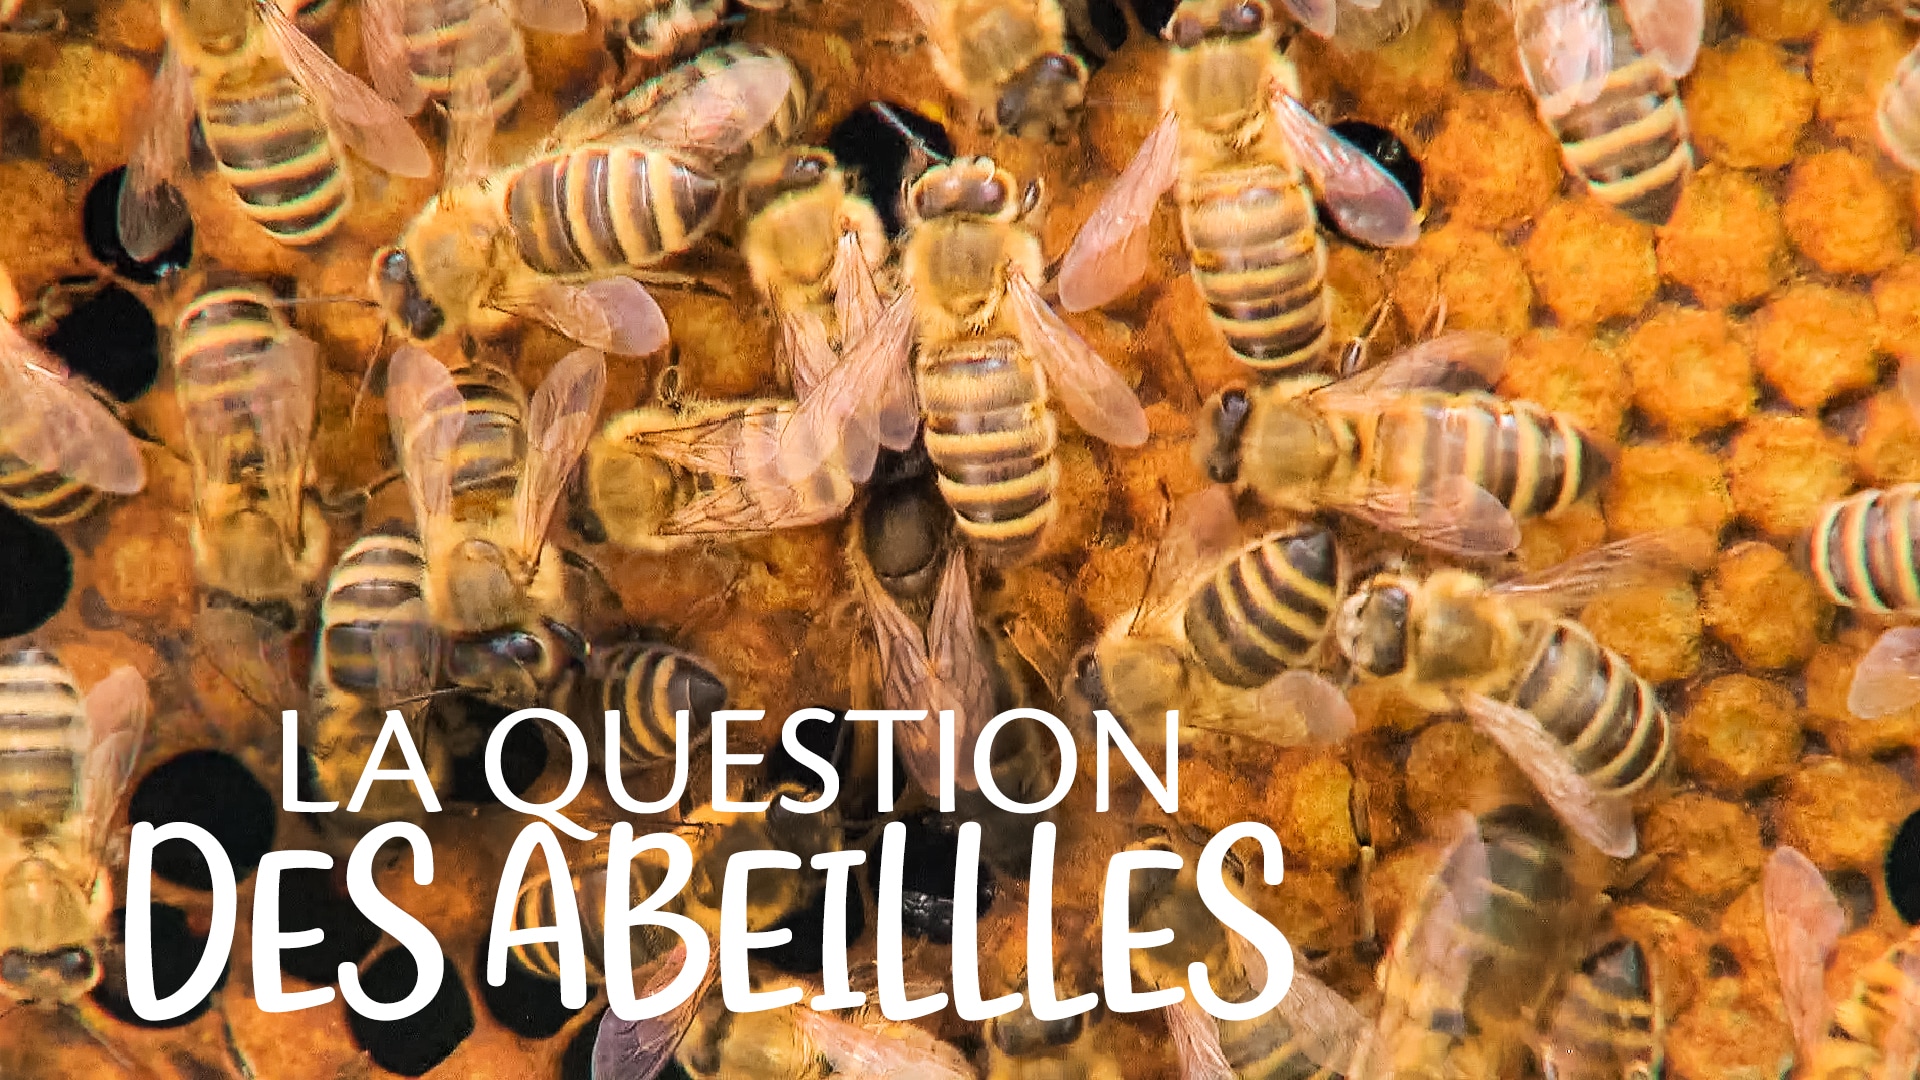 La question des abeilles